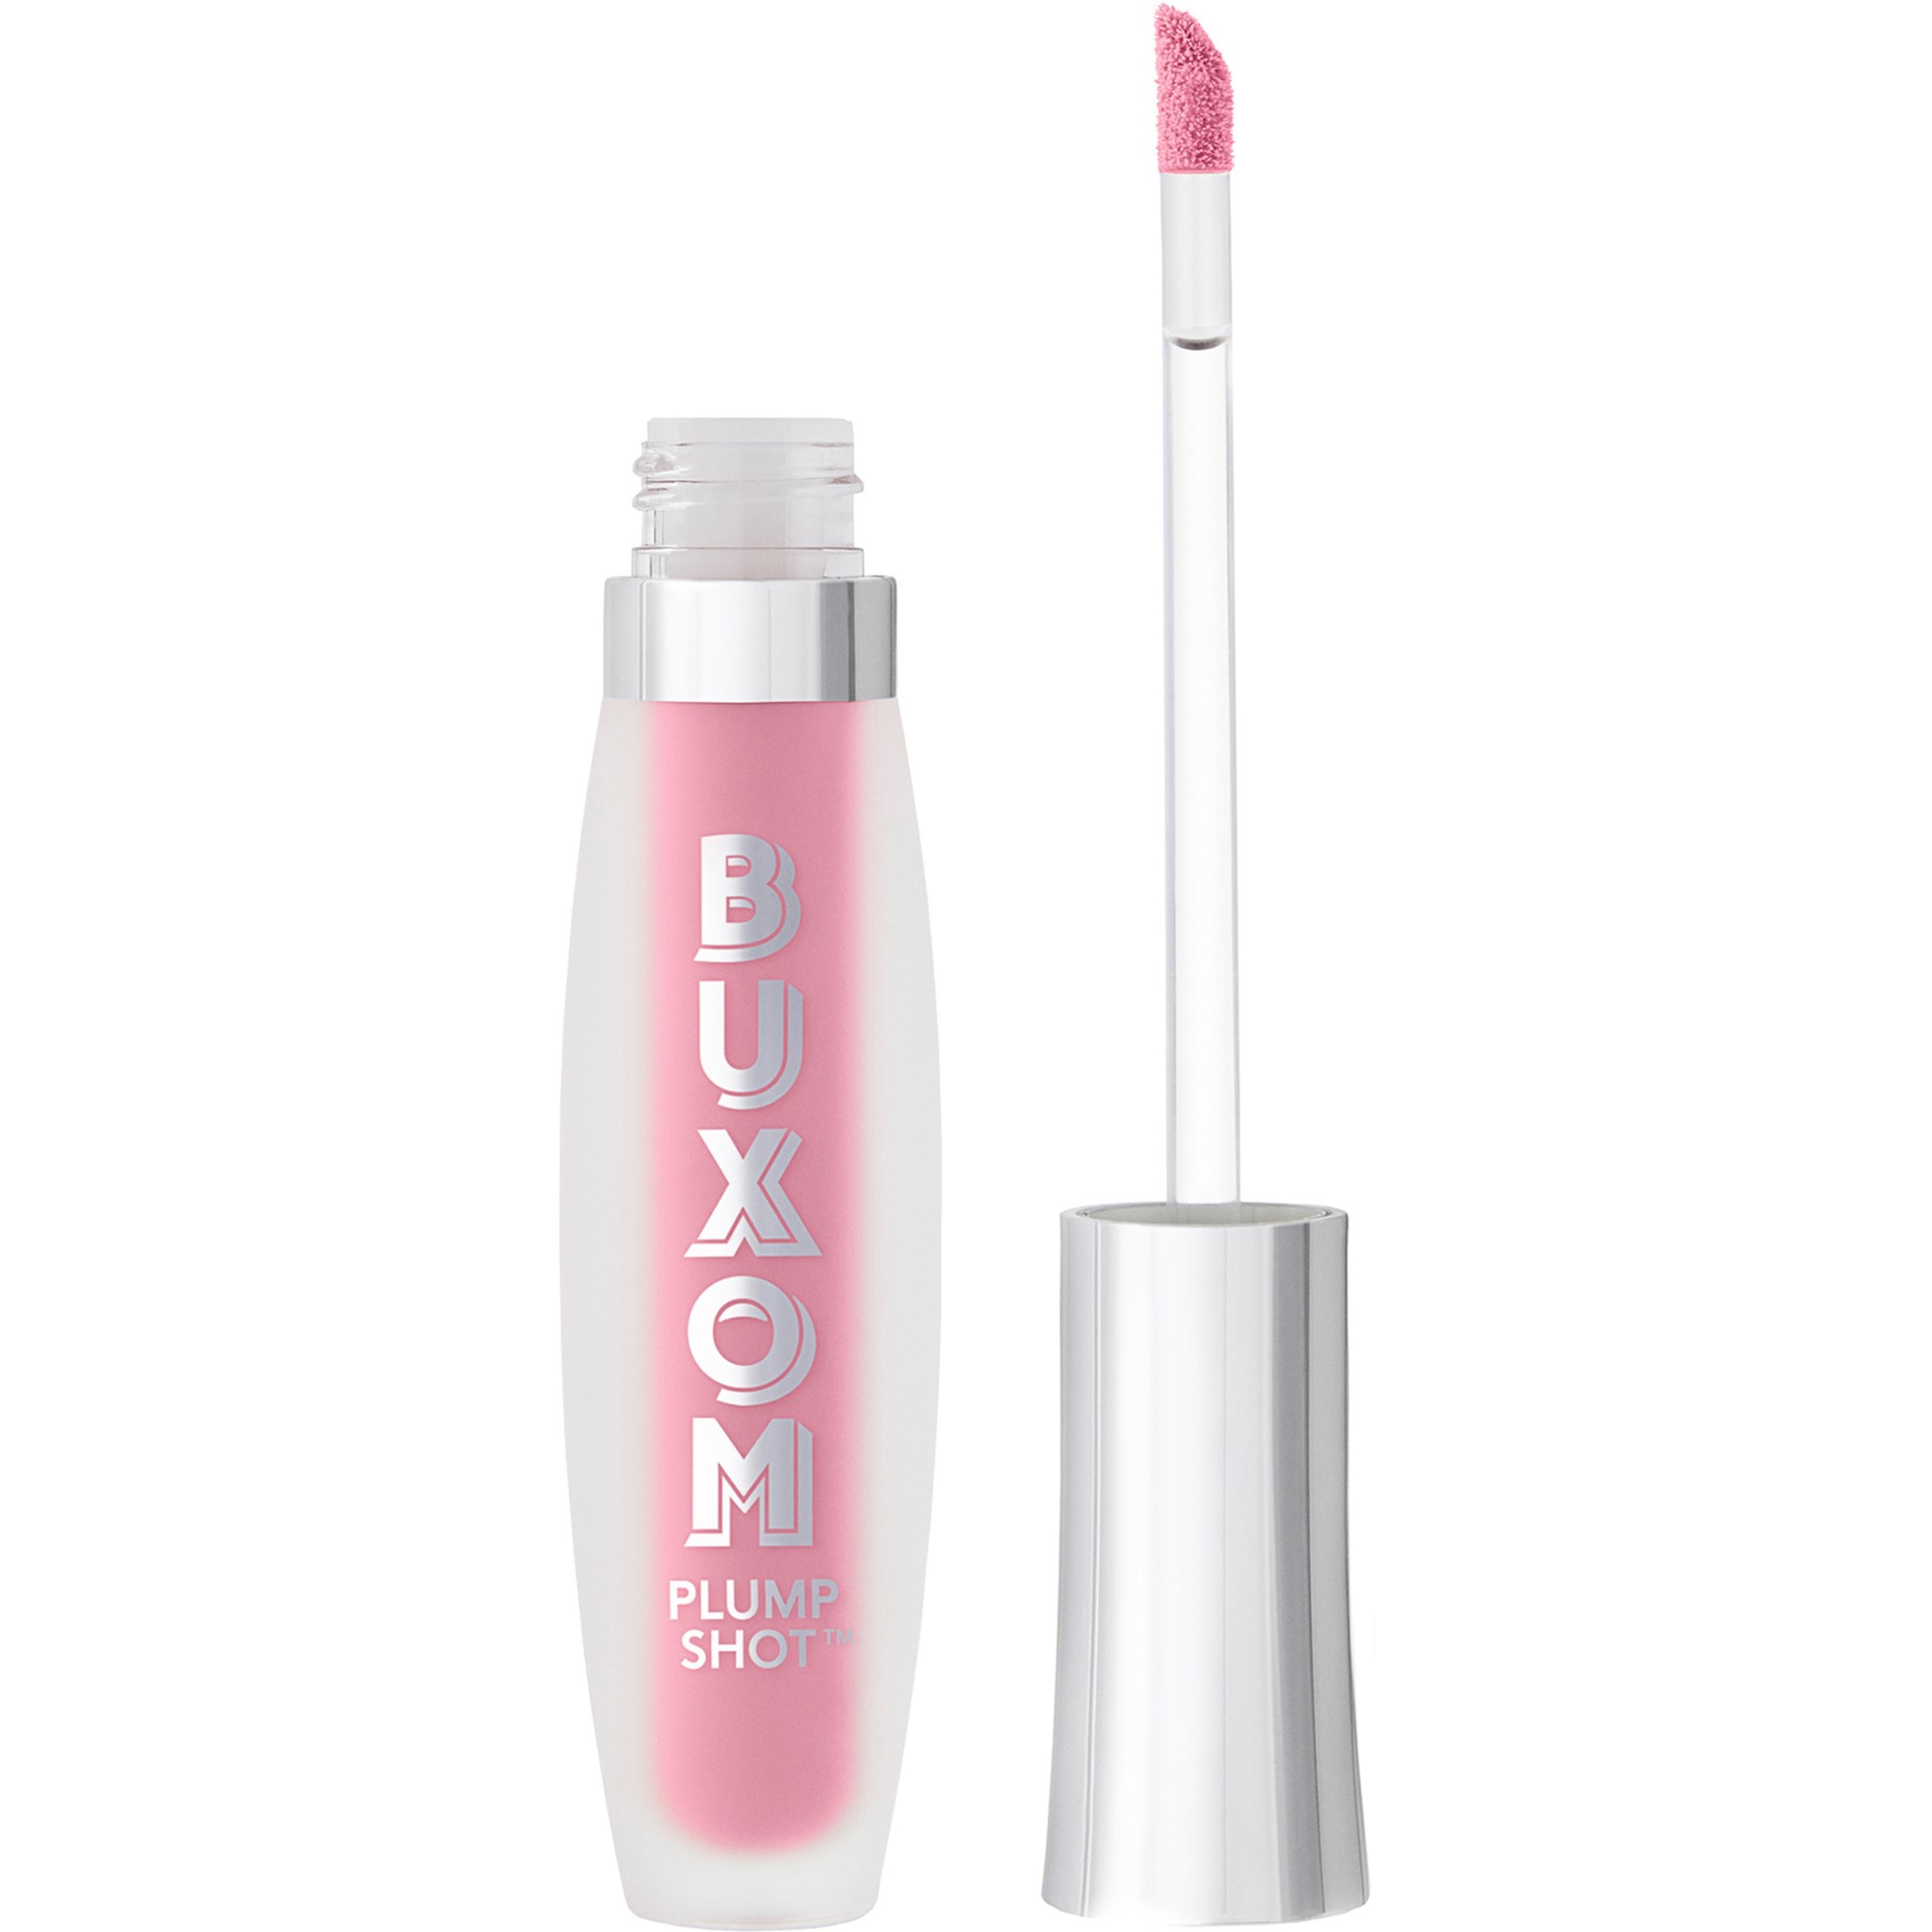 Bilde av Buxom Plump Shot™ Collagen-infused Lip Serum Lingerie